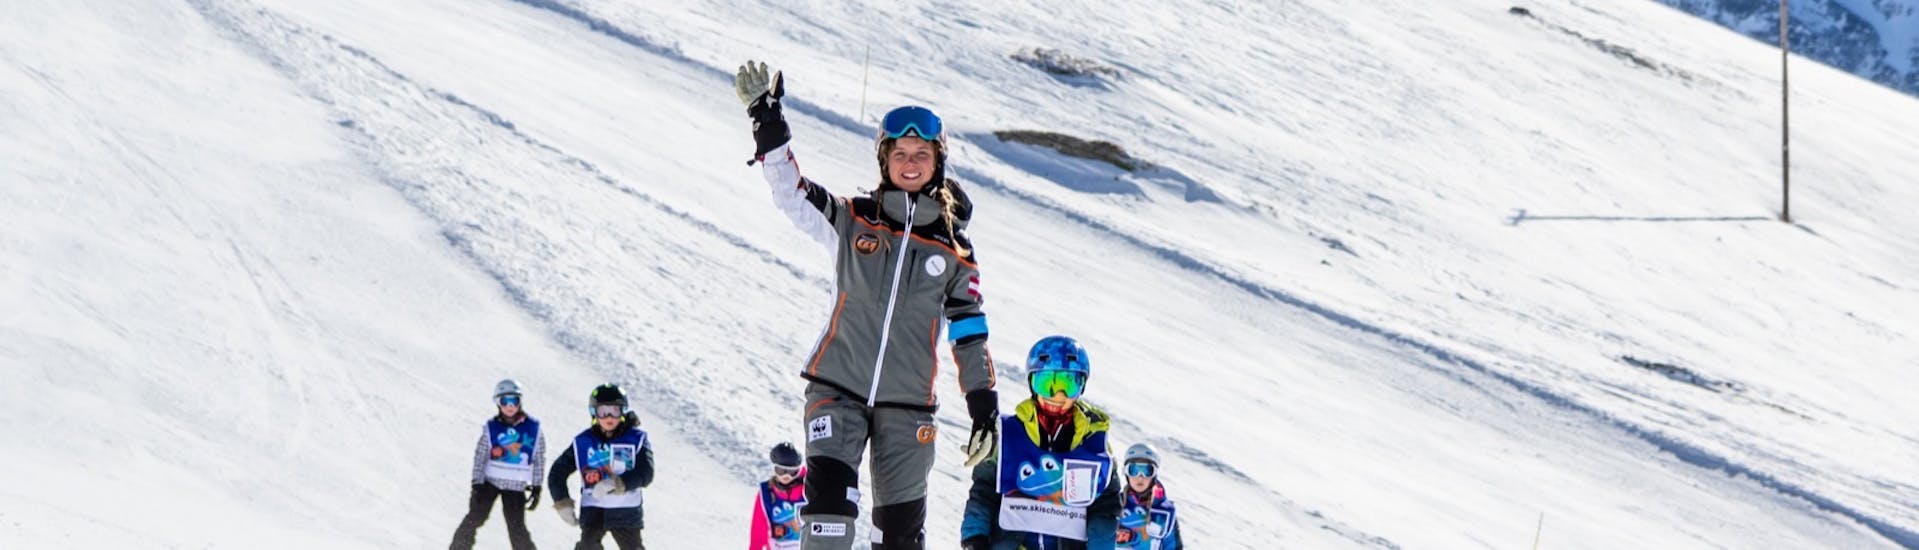 Skilessen voor Kinderen (4-14 jaar) voor Gevorderde Skiërs.